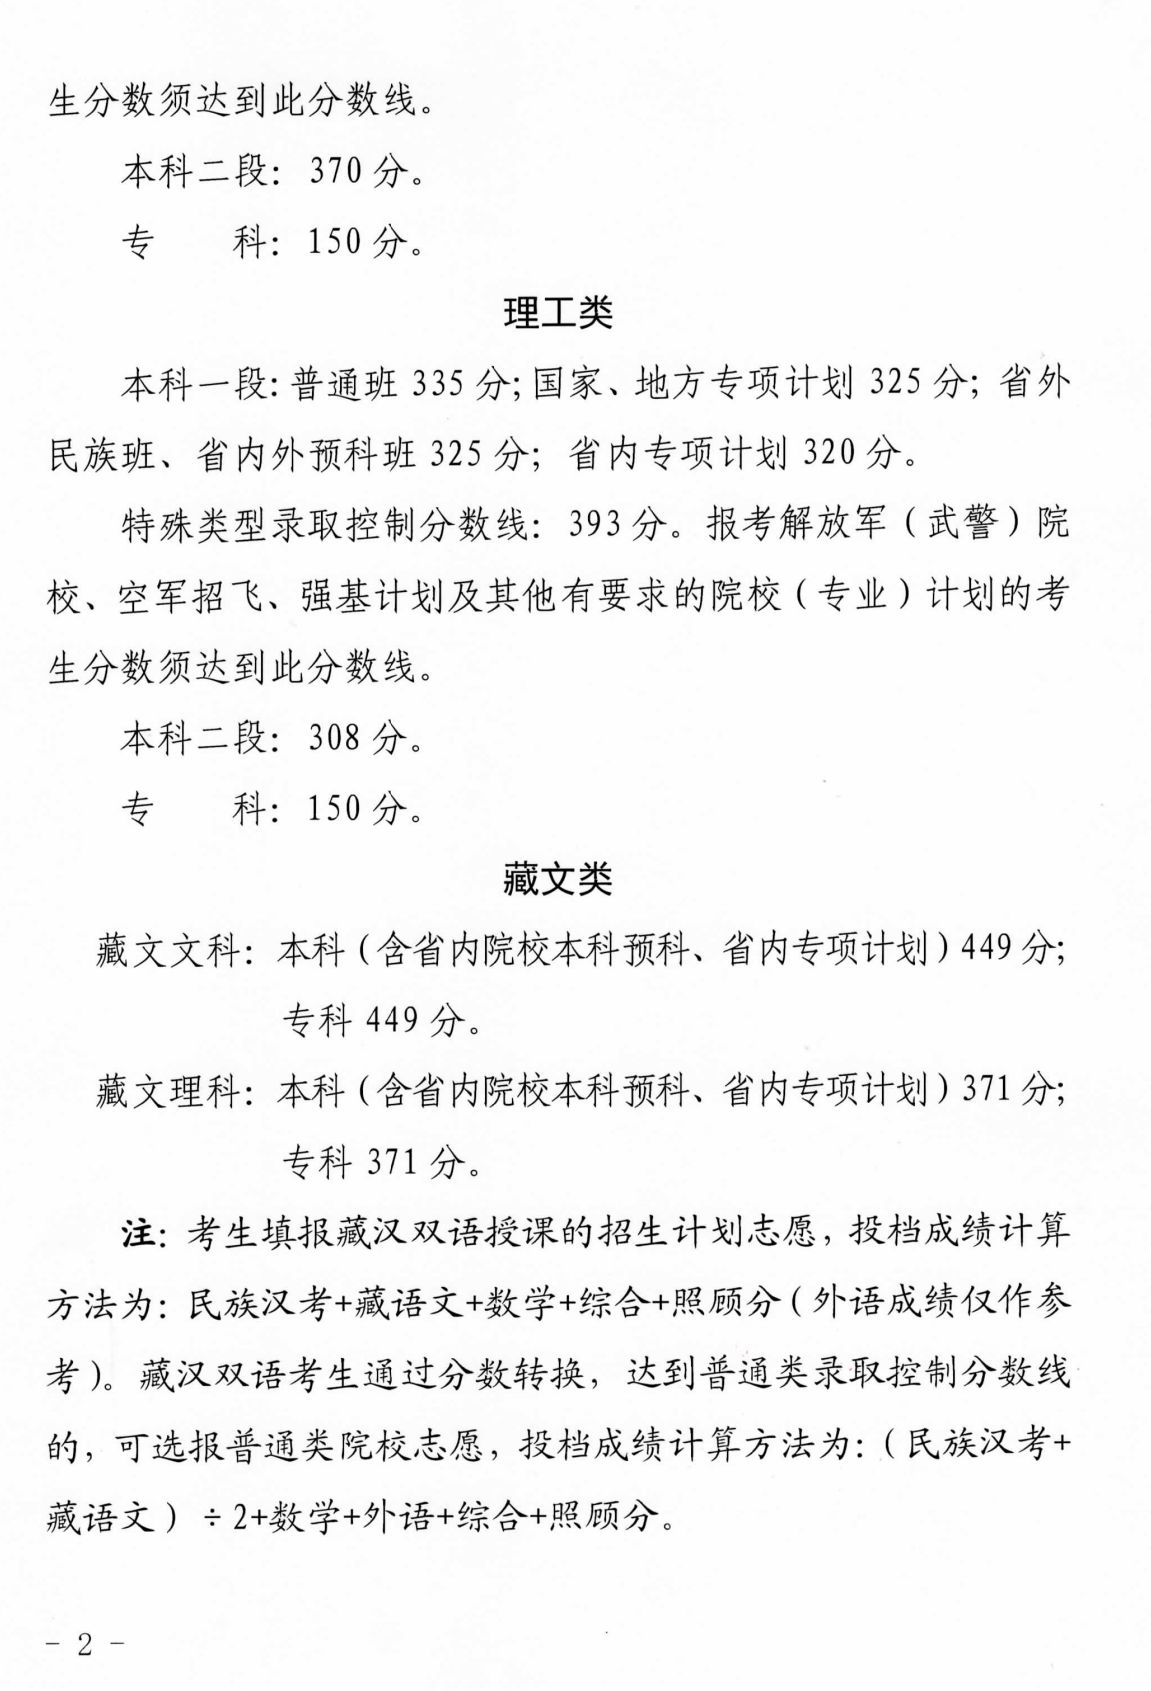 青海省高等學校招生委員會關于發布2022年普通高等學校在青招生錄取控制分數線的通知